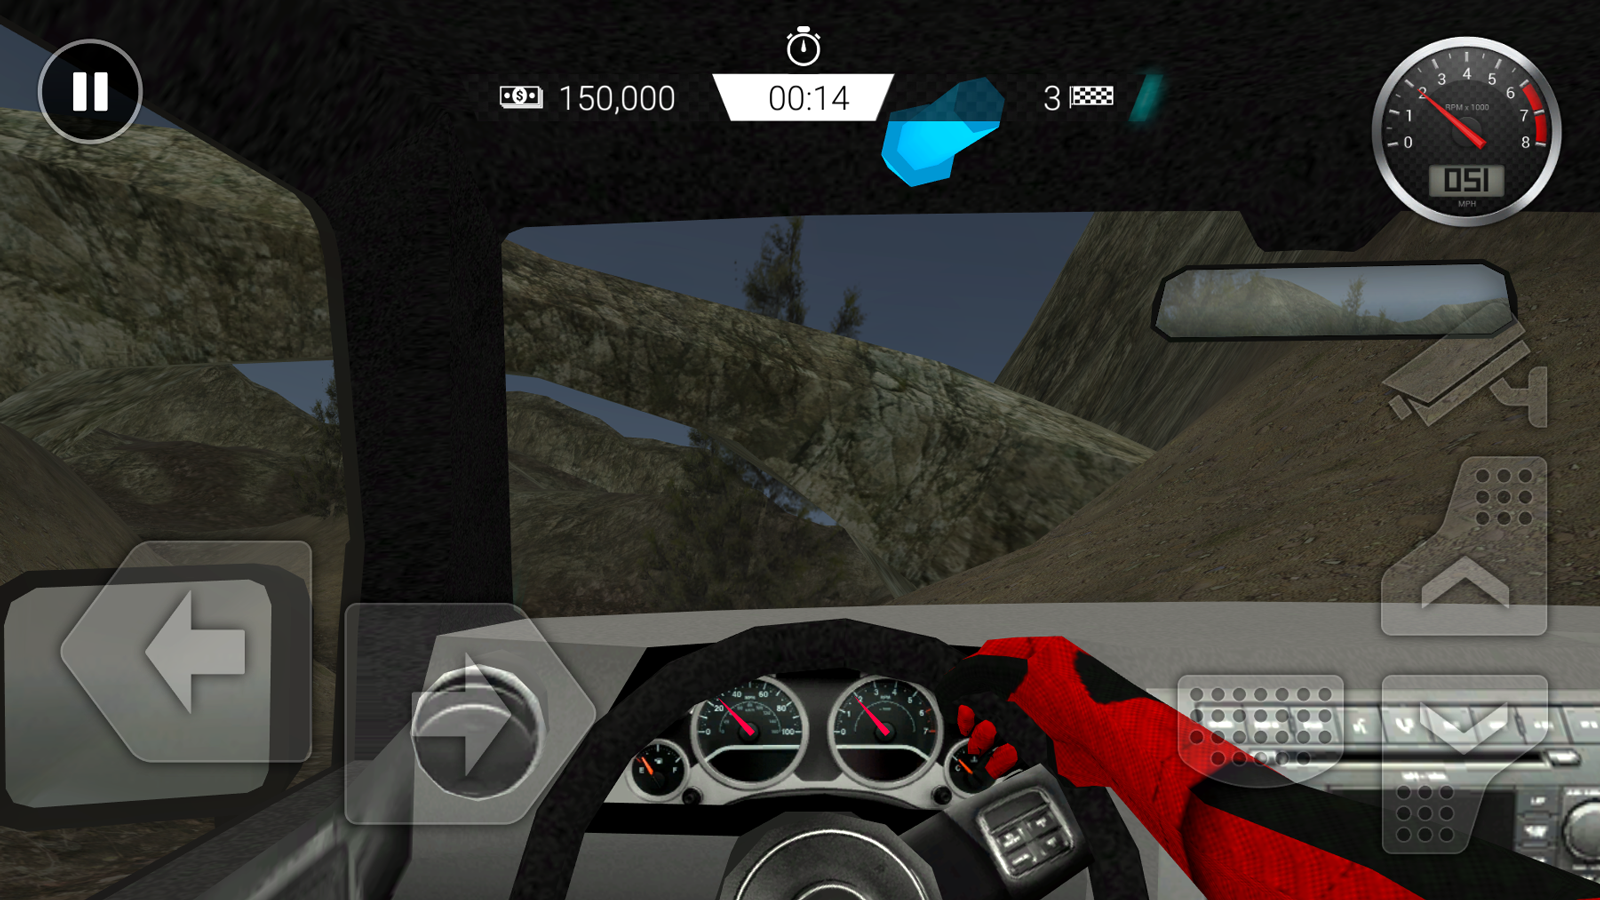 Screenshot 1 of အလွန်အမင်း Offroad မောင်းနှင်ခြင်း။ 1.0